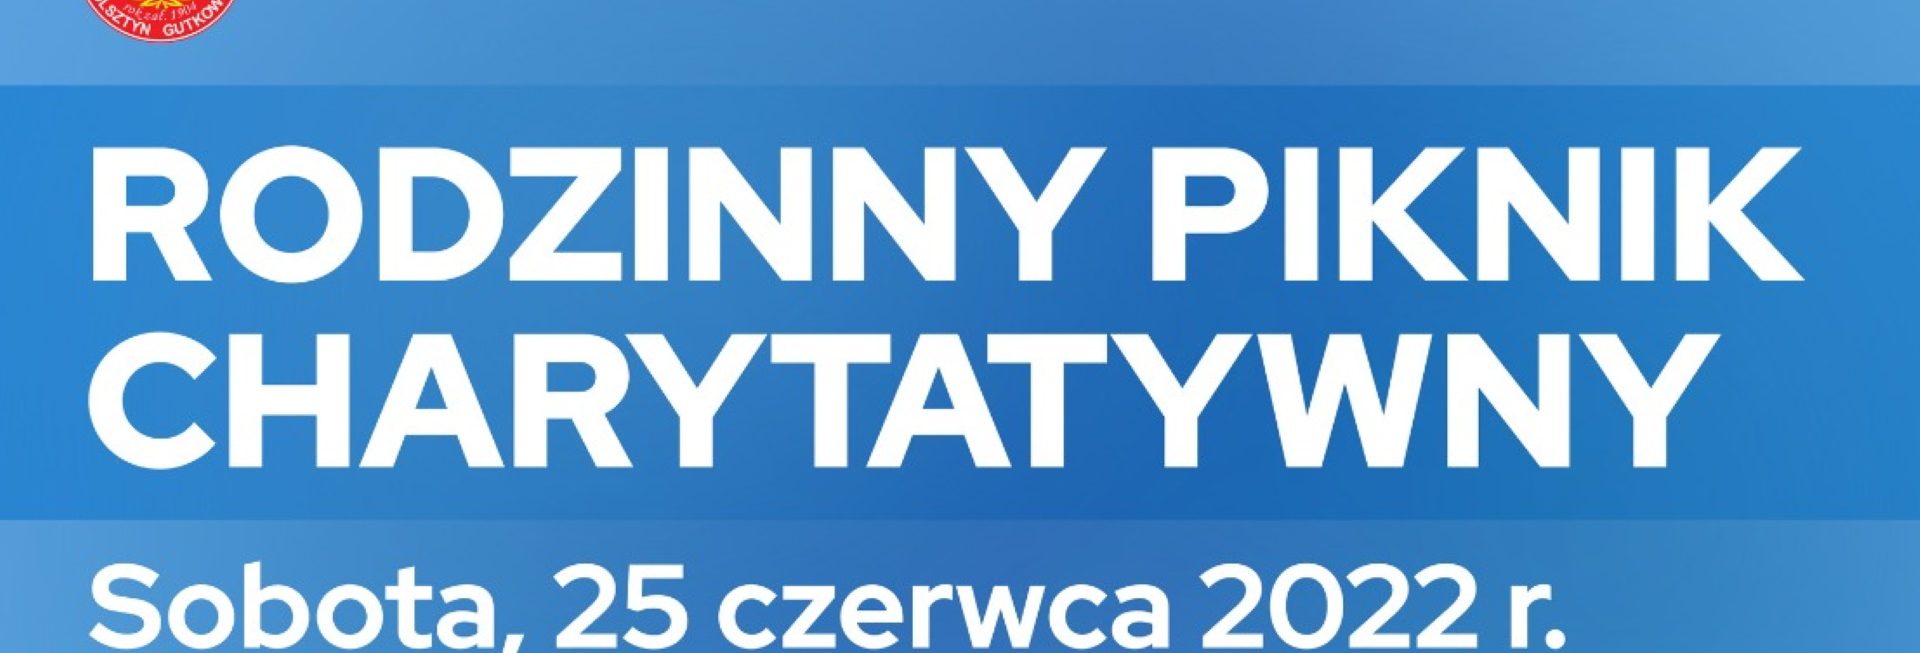 Plakat graficzny zapraszający do Gutkowa na Rodzinny Piknik Charytatywny Gutkowo 2022.